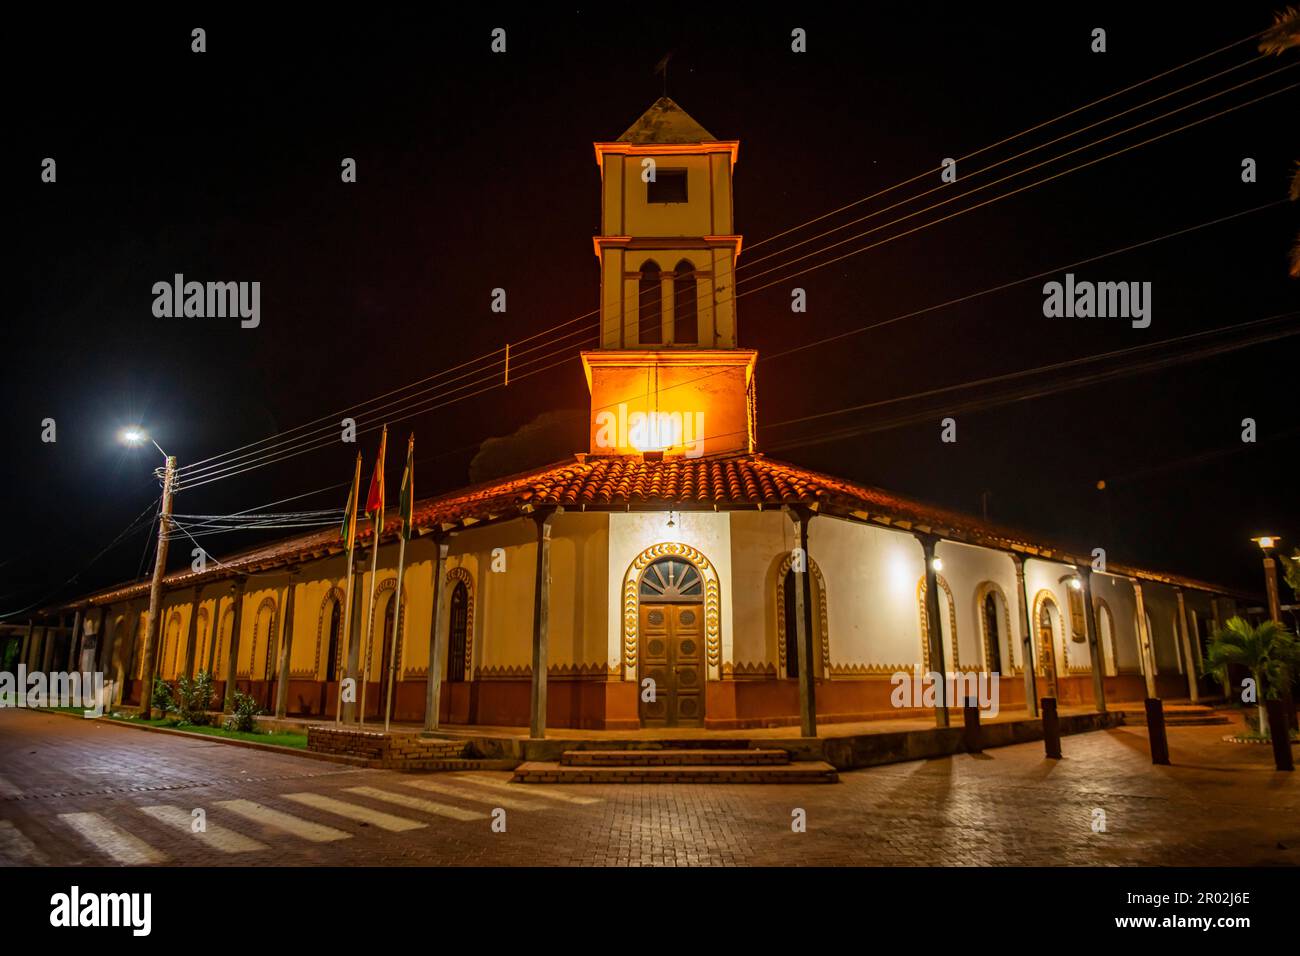 Vecchia casa coloniale, missione di Concepcion, sito UNESCO Missioni gesuite di Chiquitos, Bolivia Foto Stock